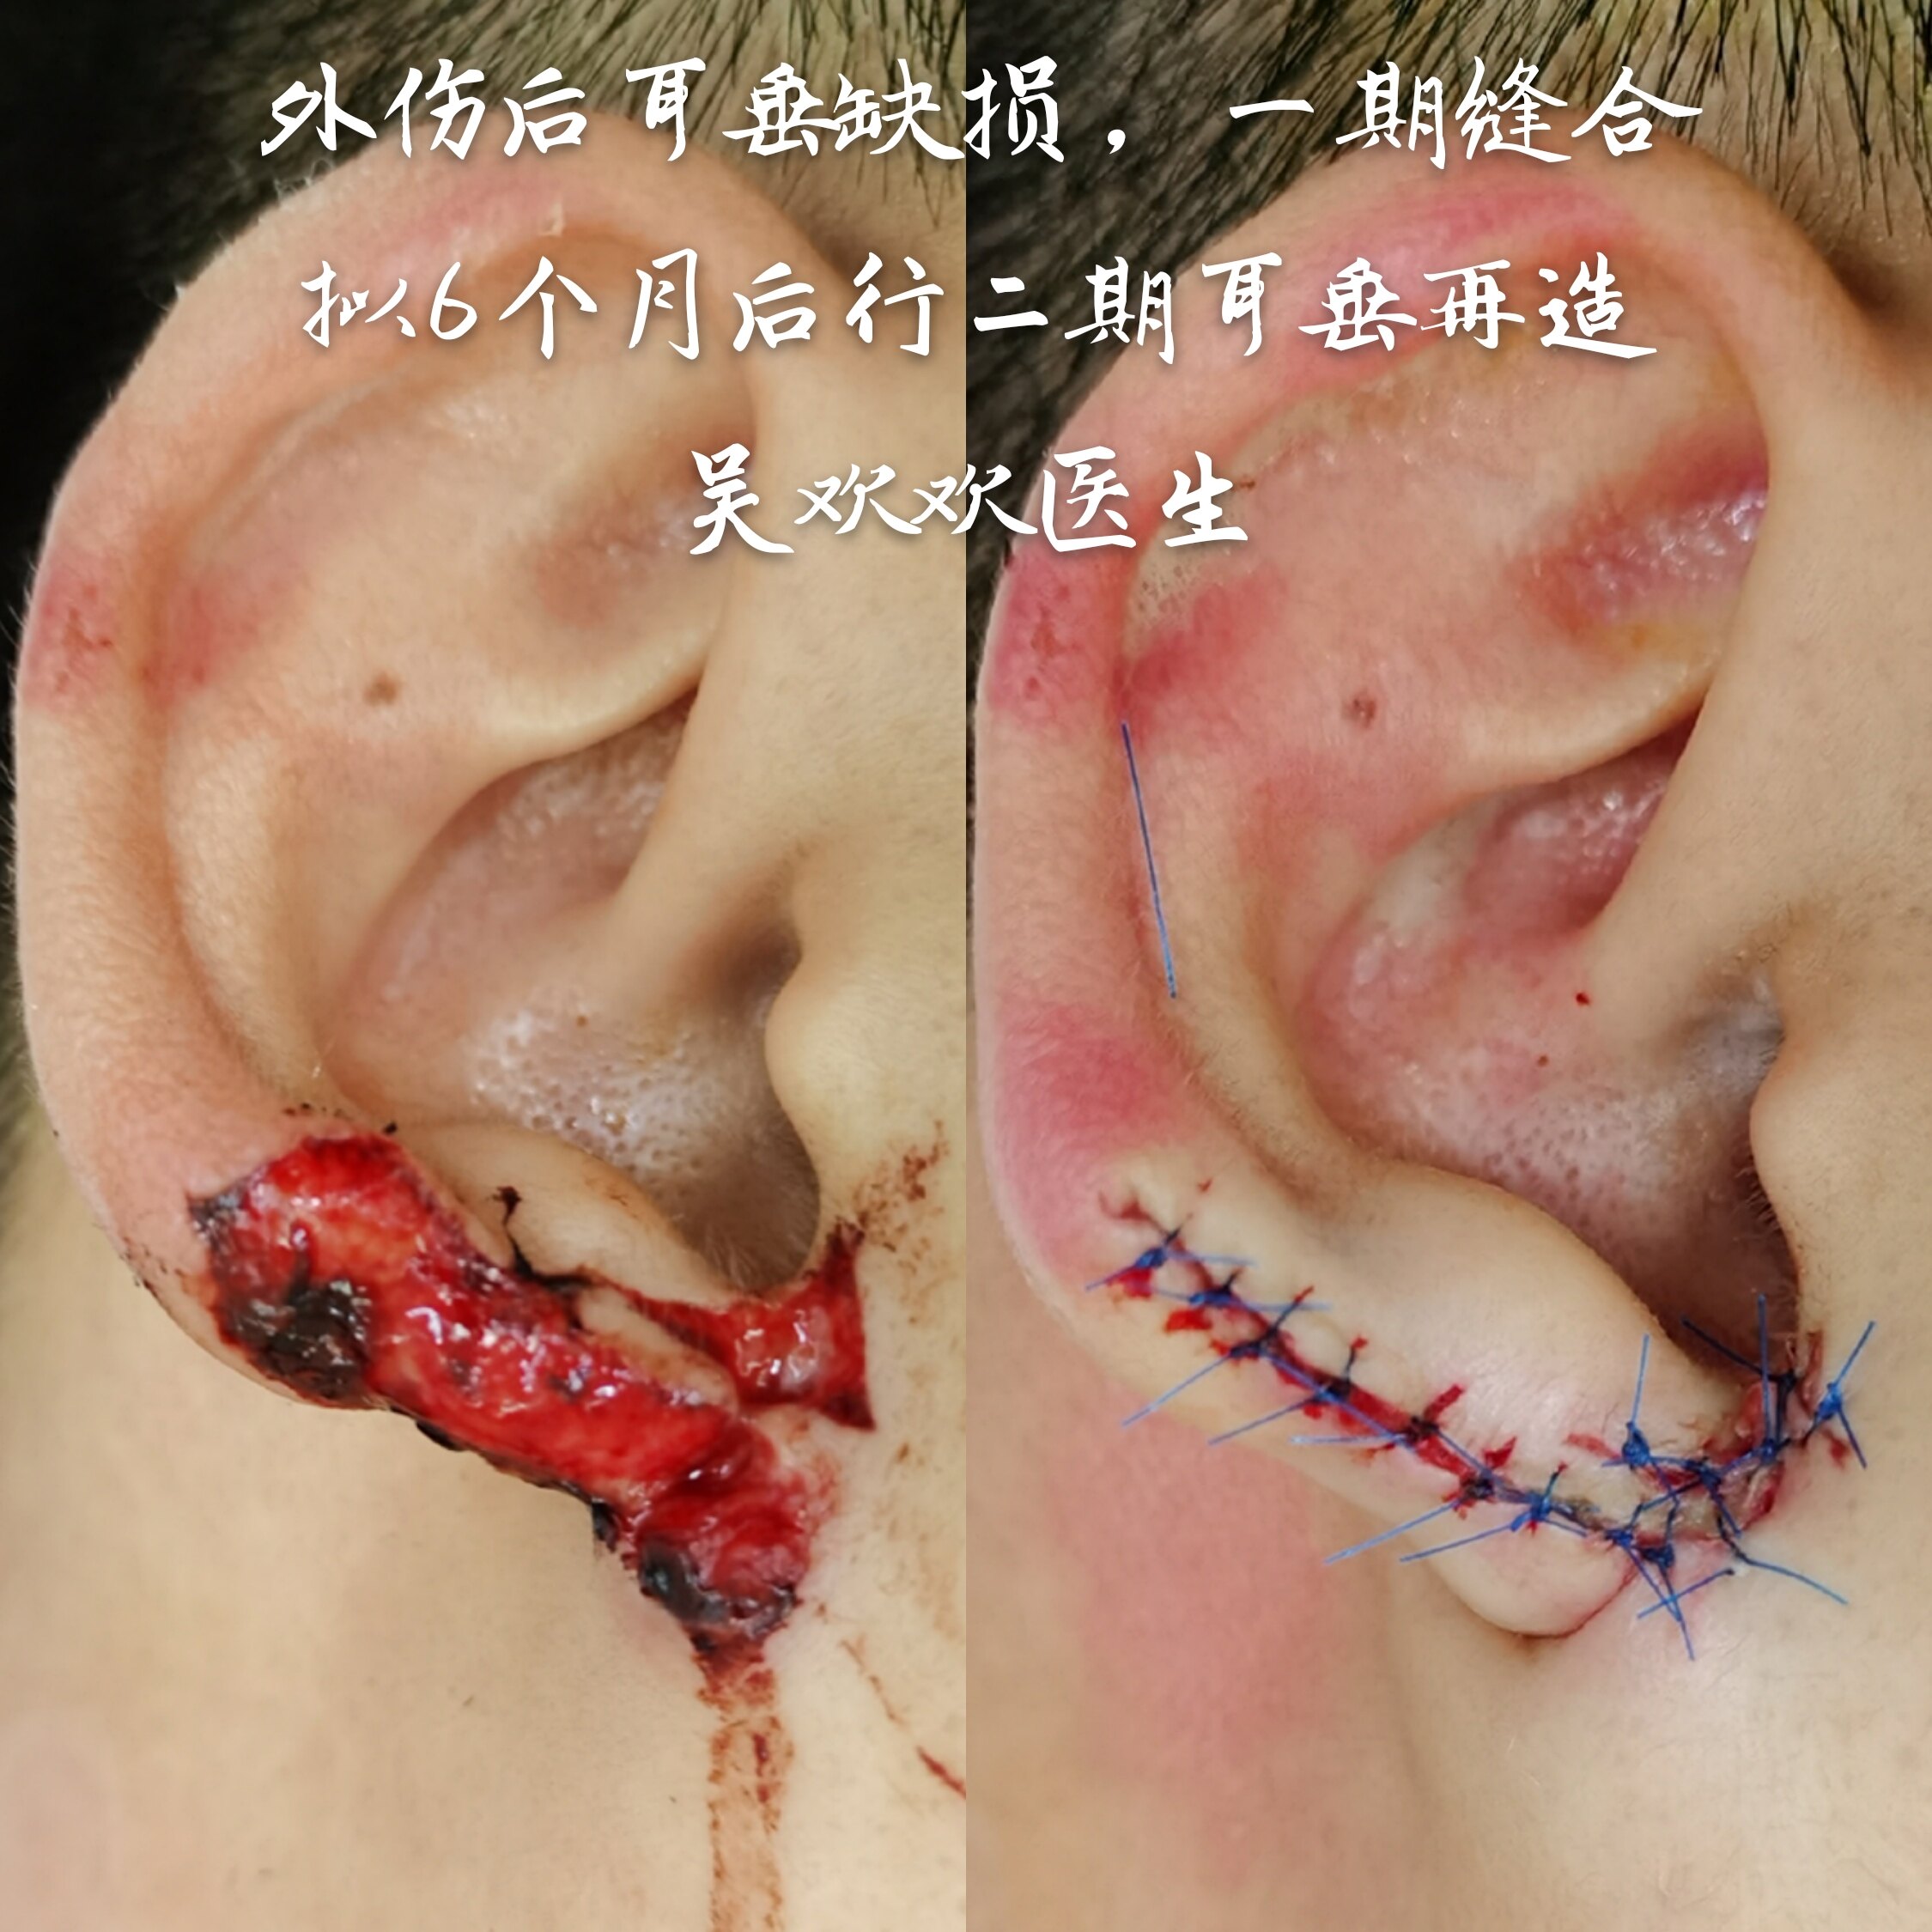 耳朵骨桥手术后图片图片